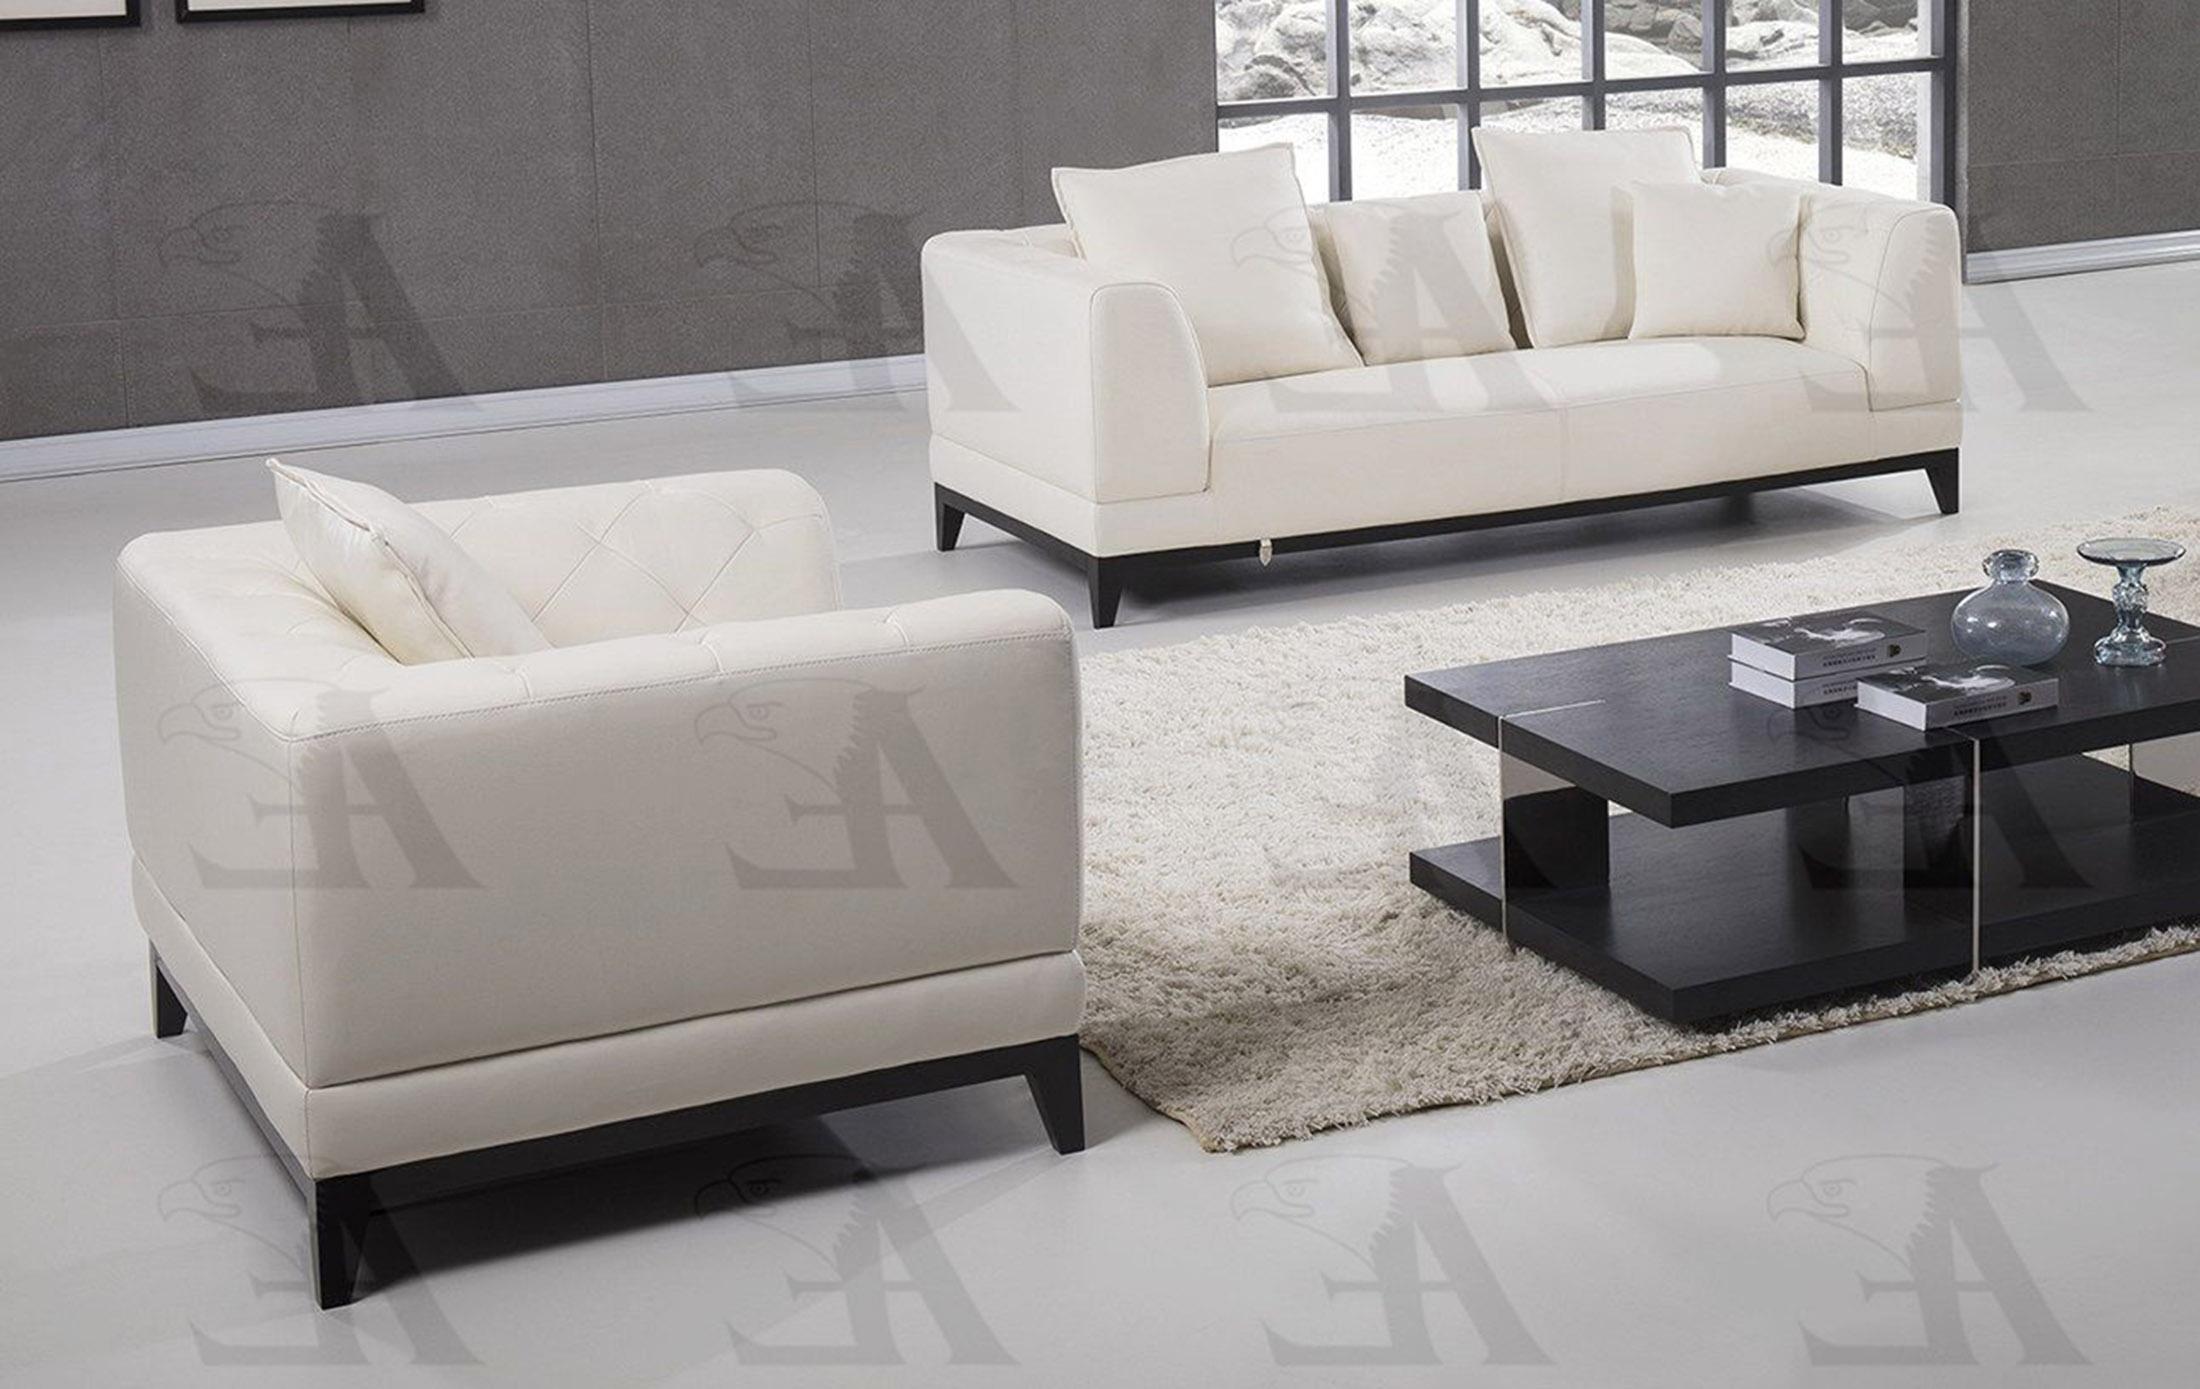 

    
American Eagle Furniture EK065-W Sofa Loveseat and Chair Set White EK065-W Set-3
